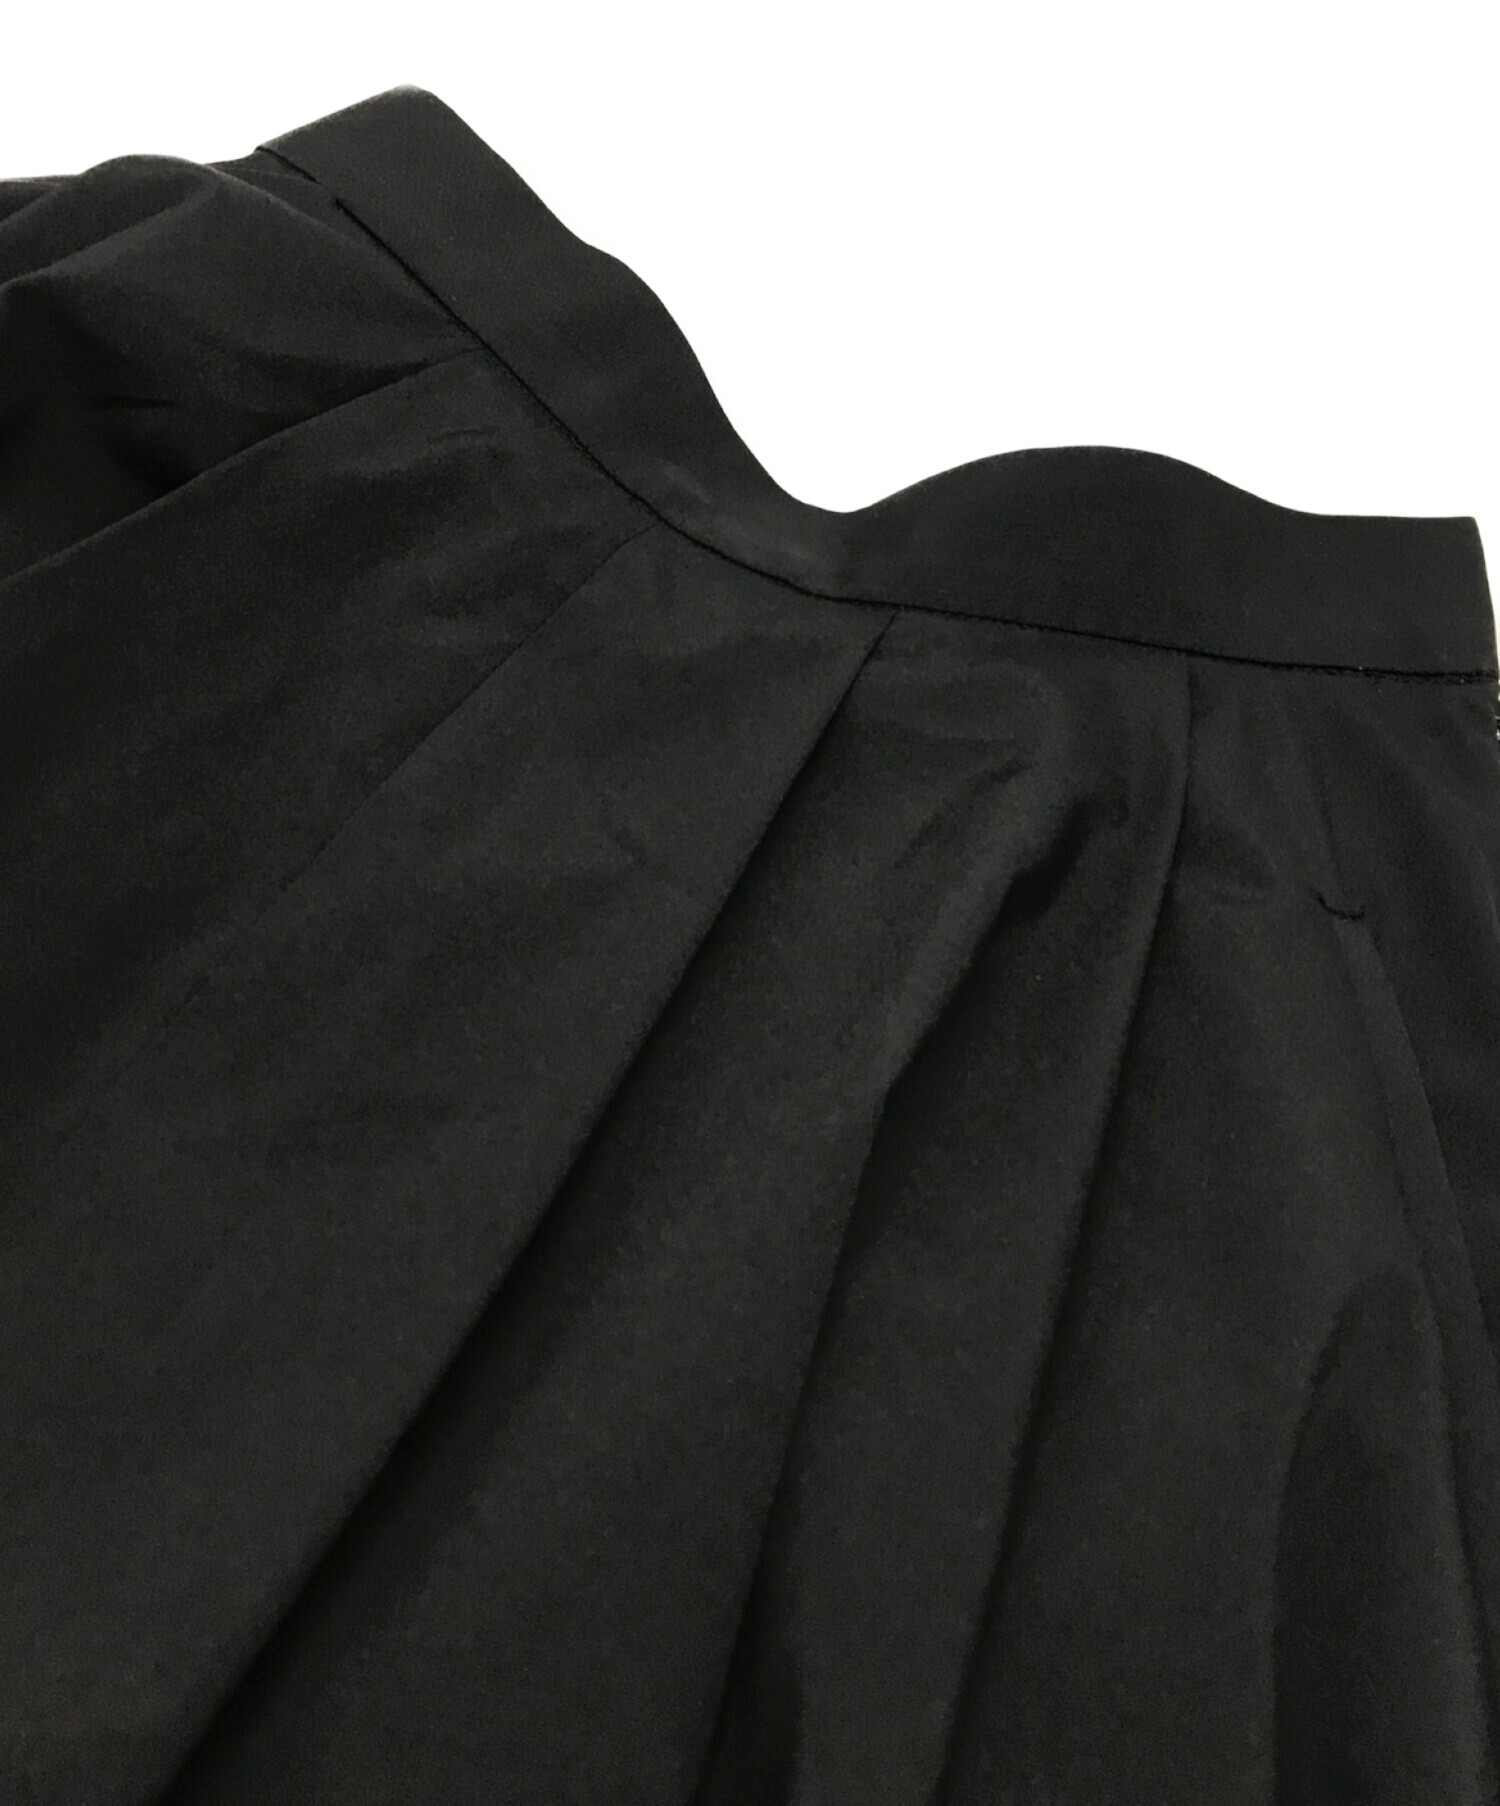 SHE tokyo (シートーキョー) KATY バルーン フレアスカート ブラック サイズ:34